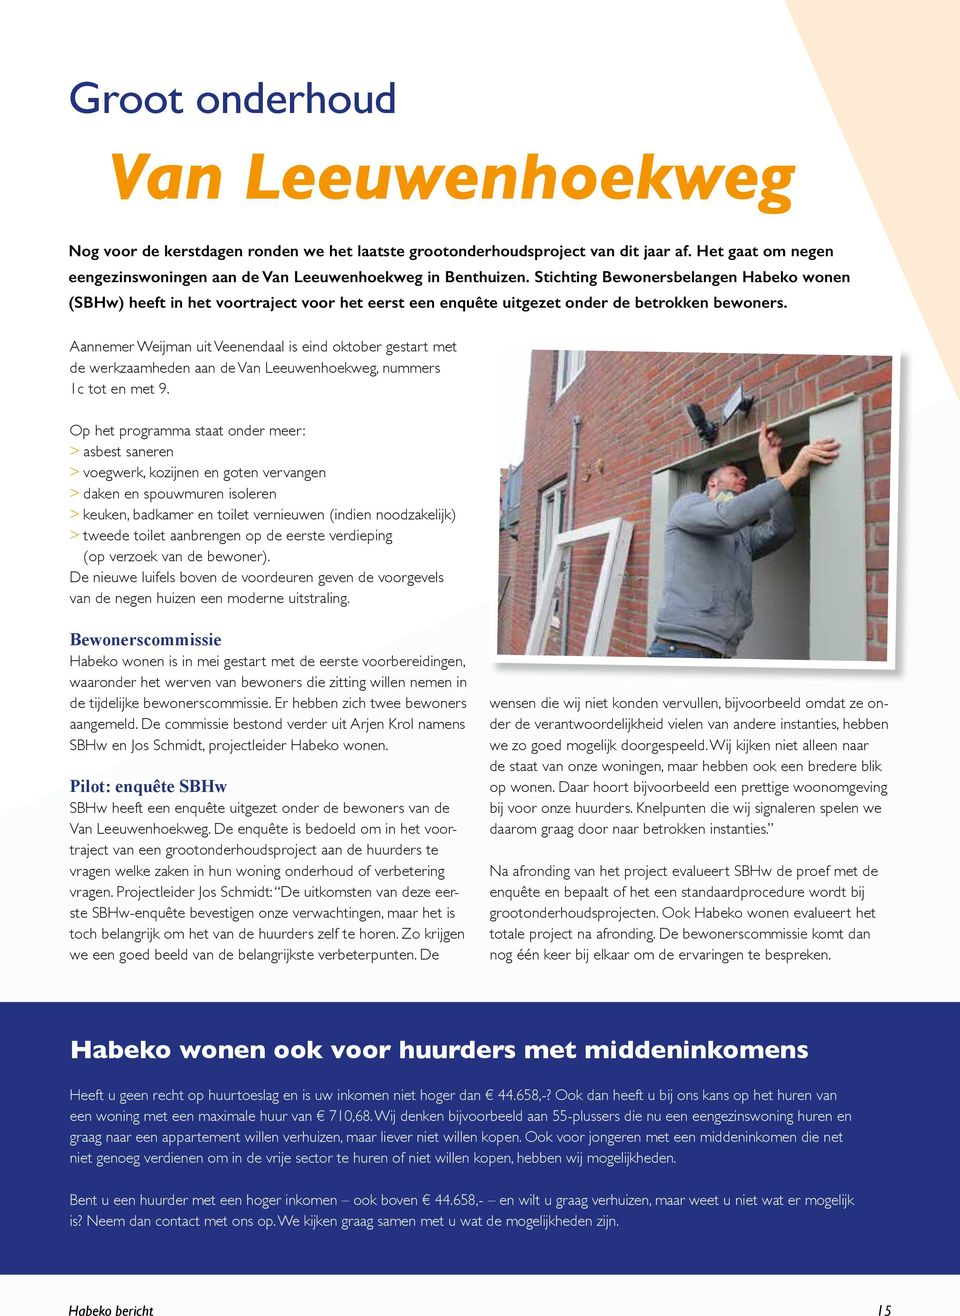 Aannemer Weijman uit Veenendaal is eind oktober gestart met de werkzaamheden aan de Van Leeuwenhoekweg, nummers 1c tot en met 9.